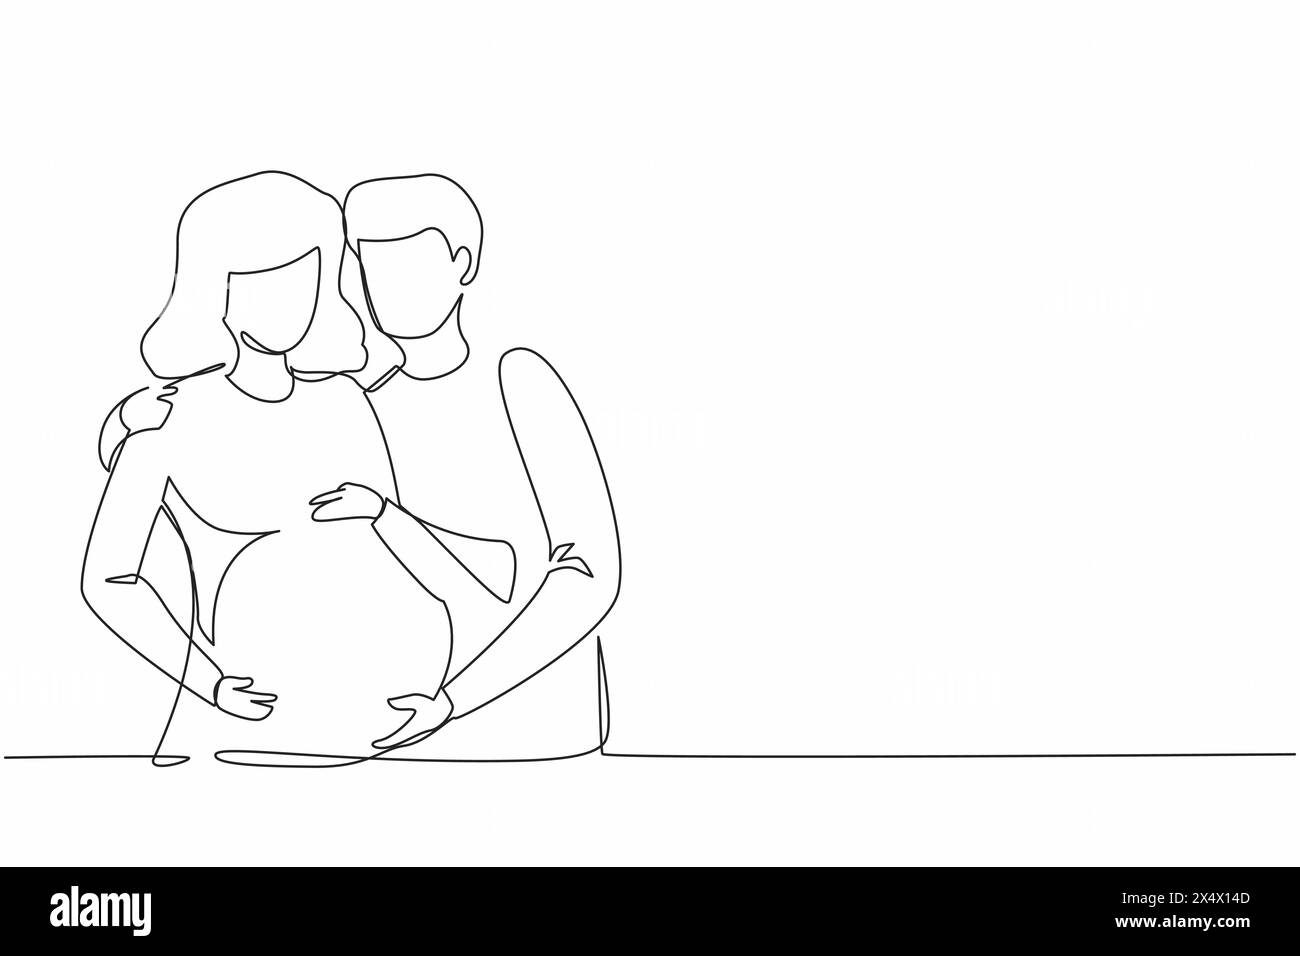 Einfache durchgehende Linienzeichnung flache Illustration über Schwangerschaft und Partnergeburt. Junge schwangere Frau mit Ehemann. Der Mann passt auf und umarmt seine Ehefrau Stock Vektor